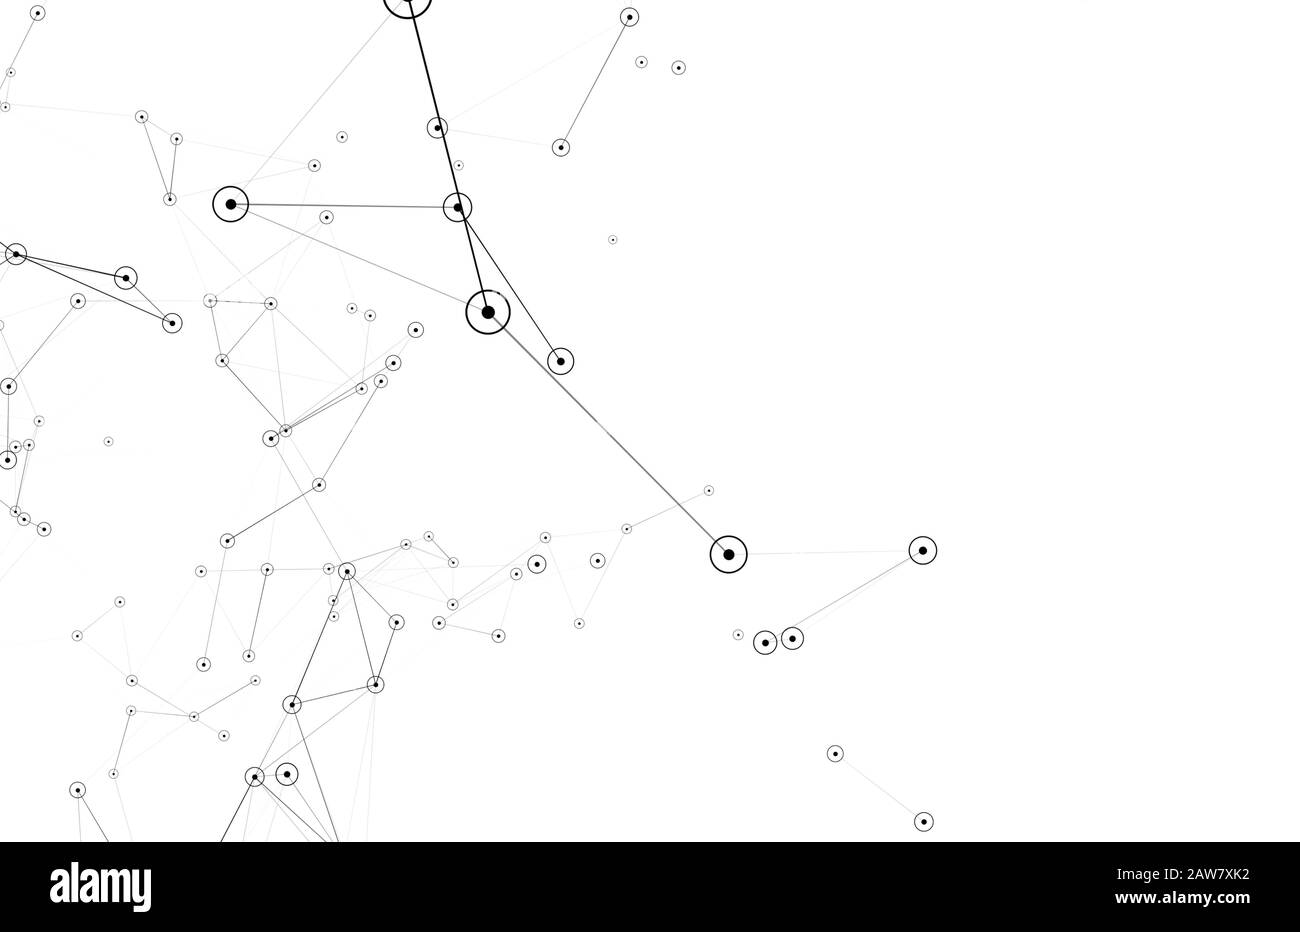 Illustrazione della rete di linee e cerchi collegati 3d isolata su sfondo bianco Foto Stock